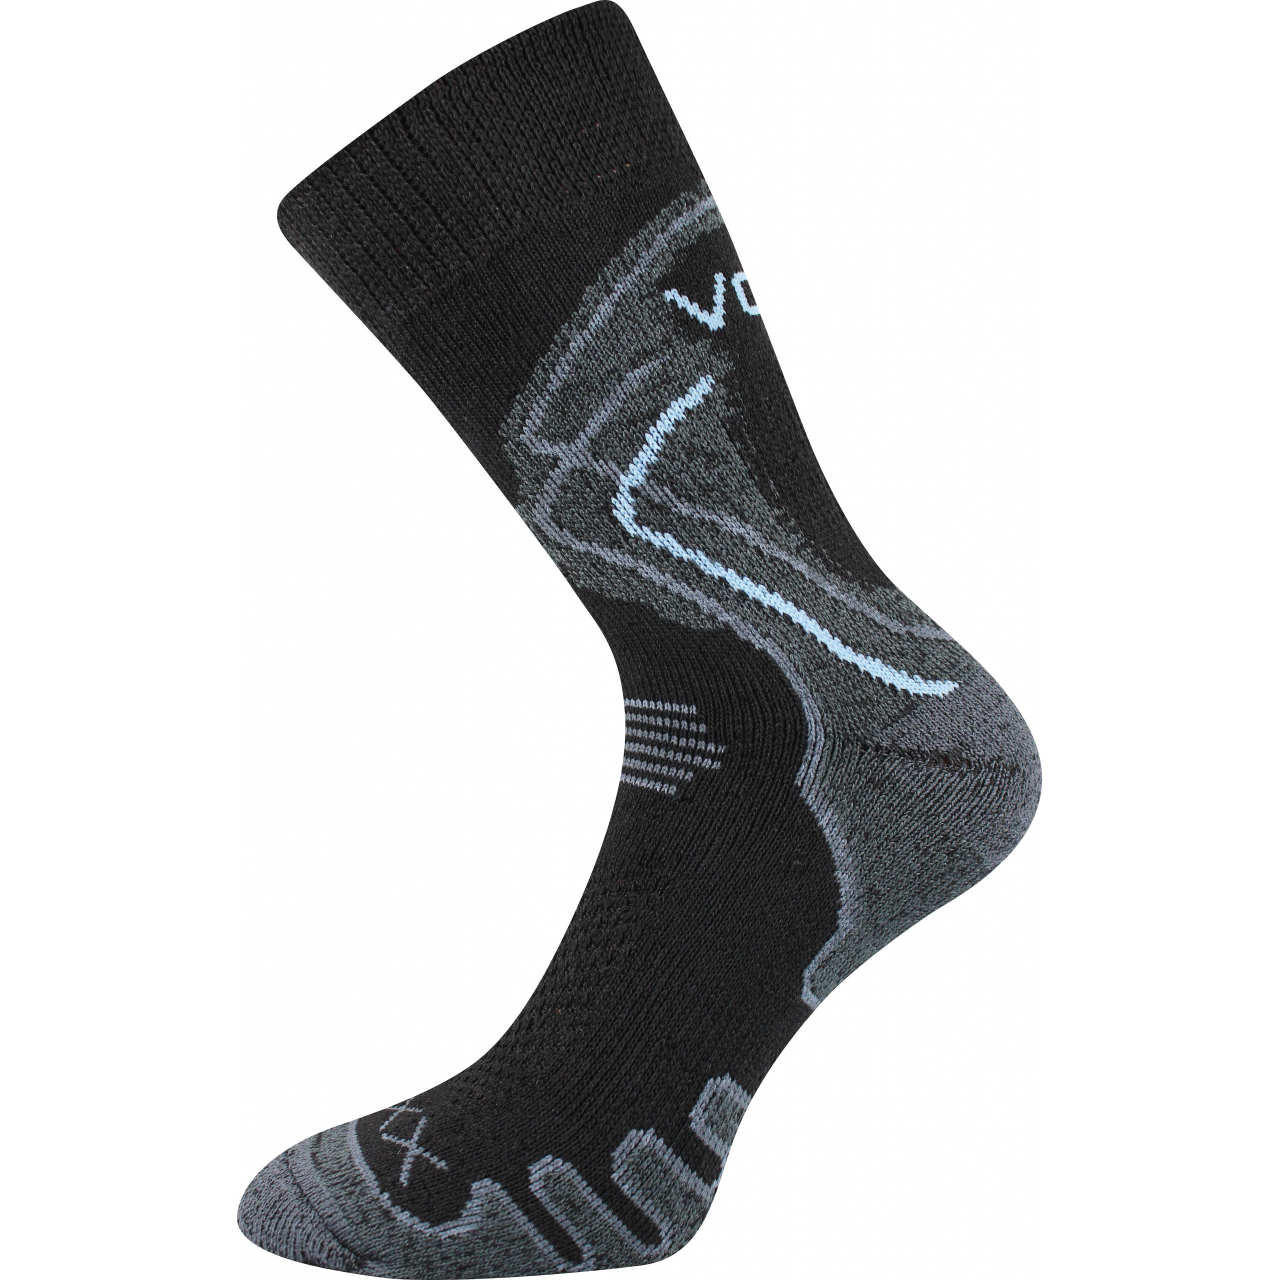 Ponožky trekingové unisex Voxx Limit III - černé, 39-42